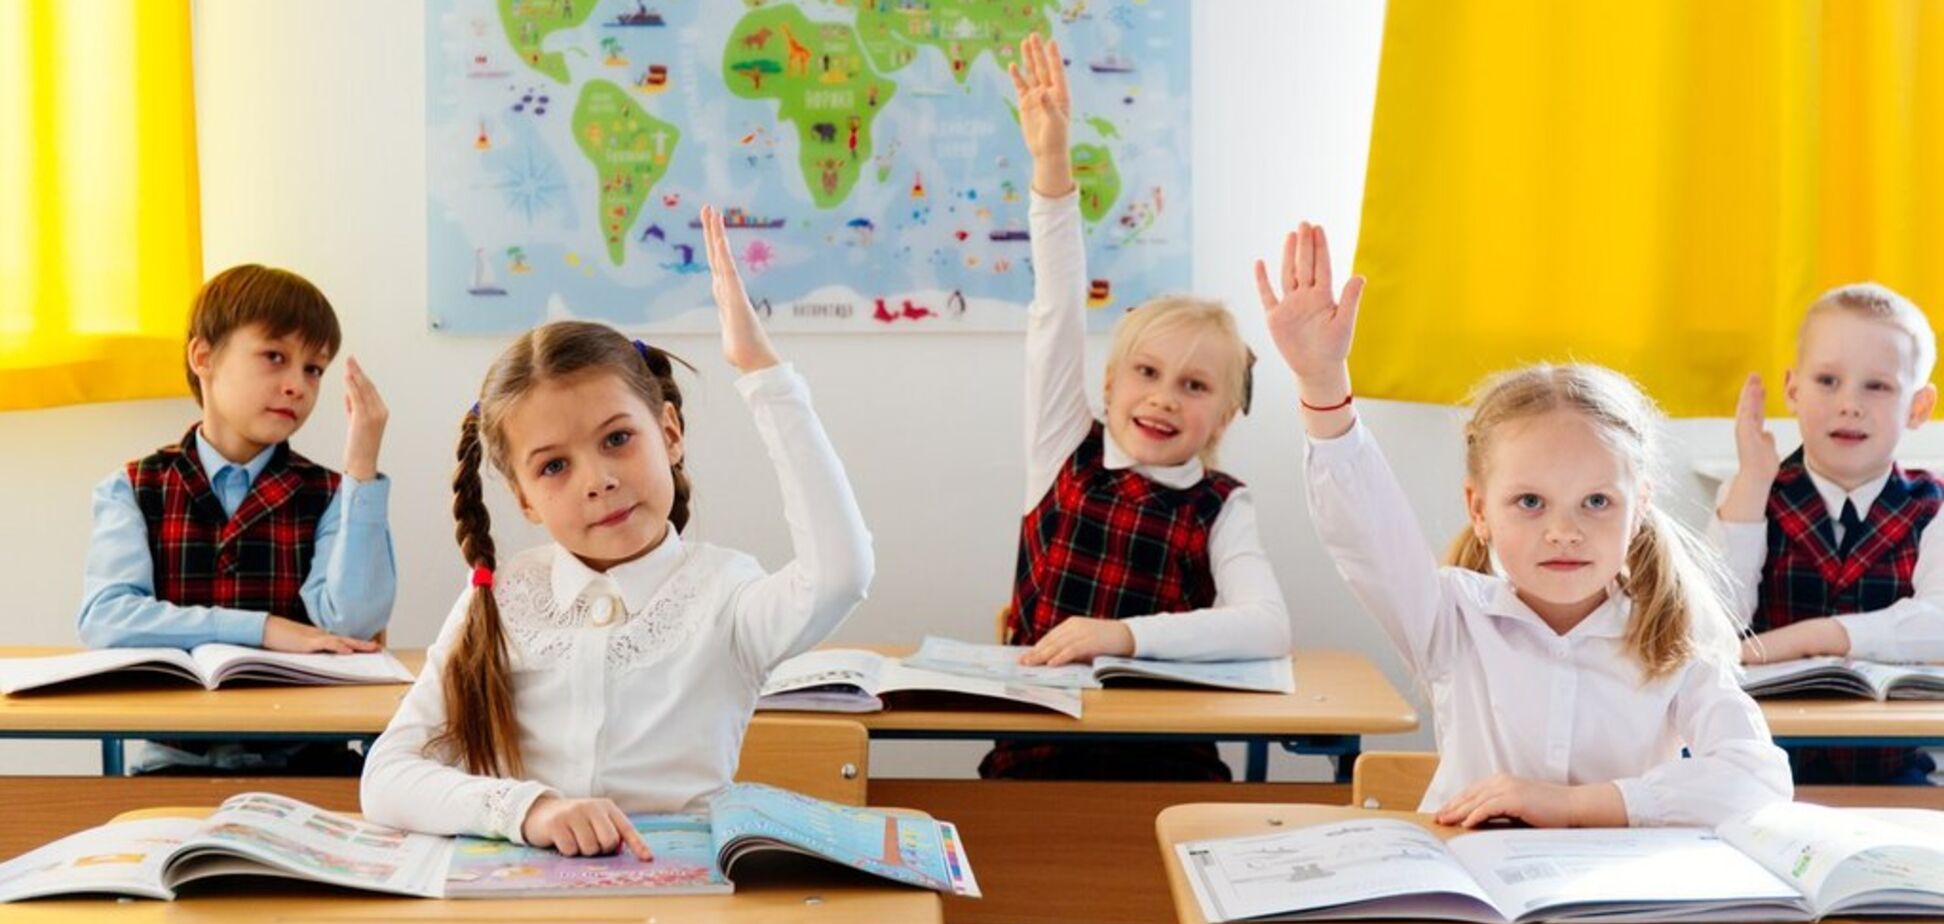 Перемогти буллінг і бюрократію в школі. Досвід Литви для України